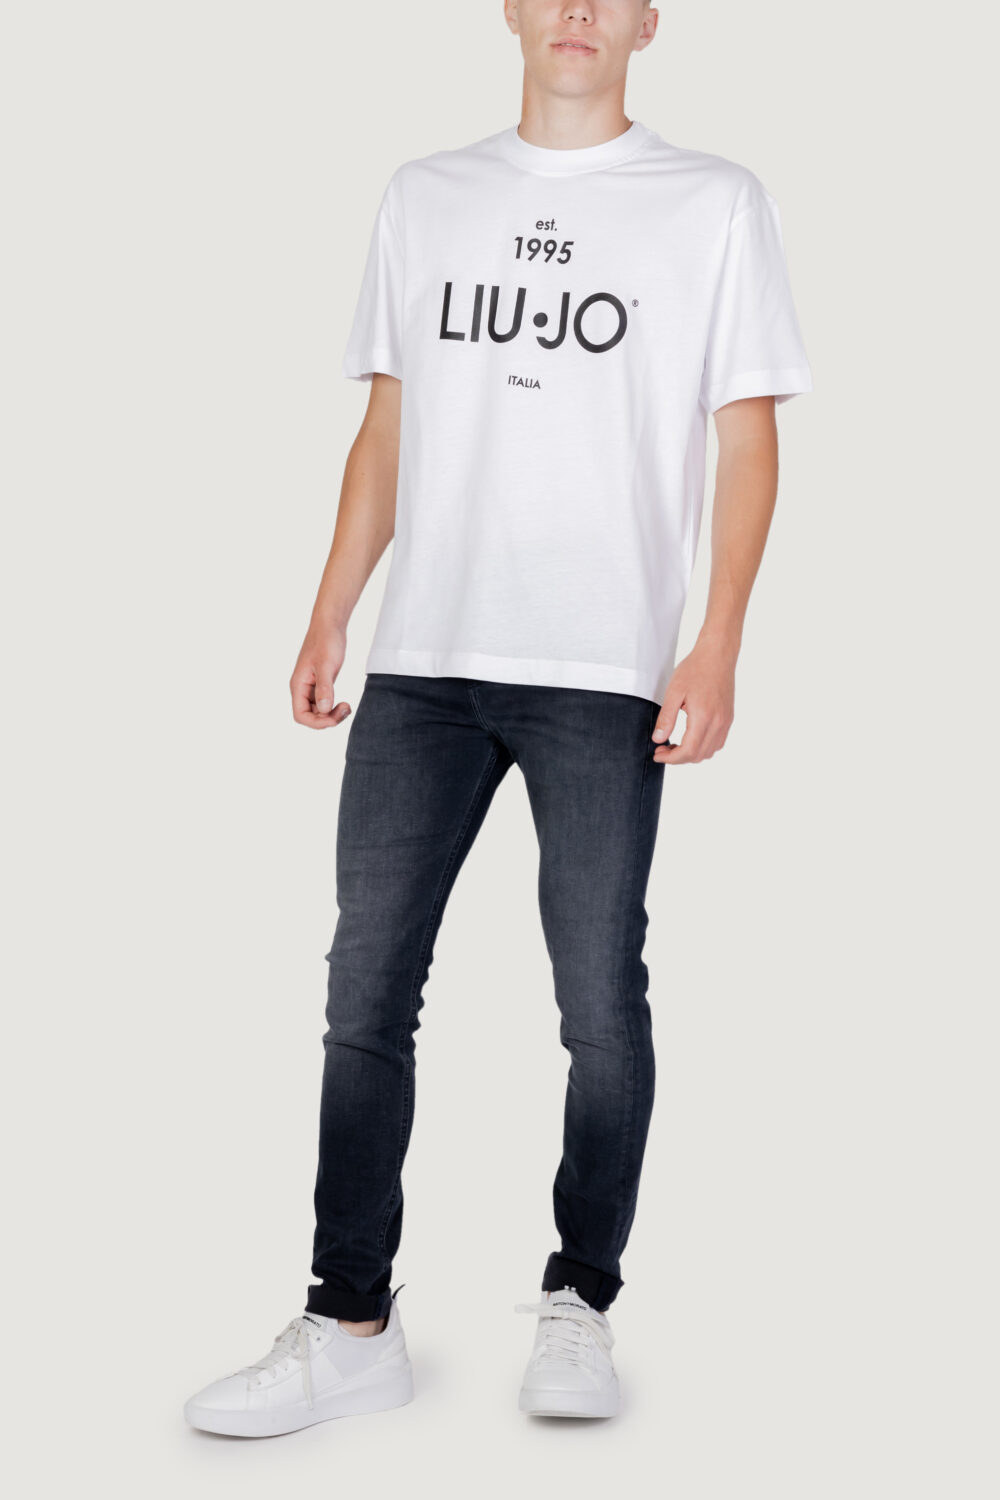 T-shirt Liu-Jo est 1995 Bianco - Foto 5